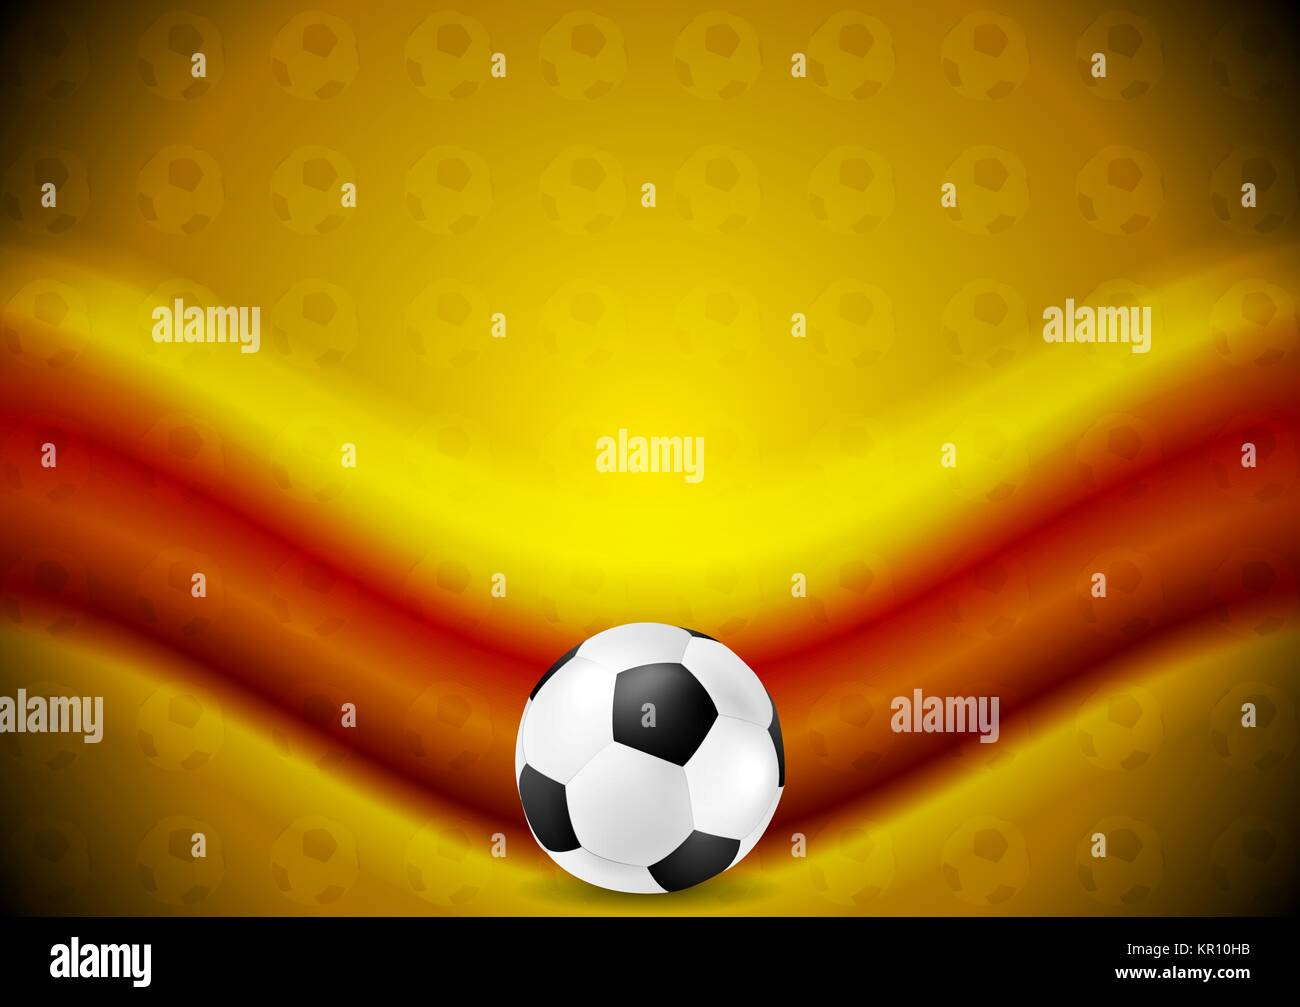 Orange soccer football sfondo con onda rossa Foto Stock